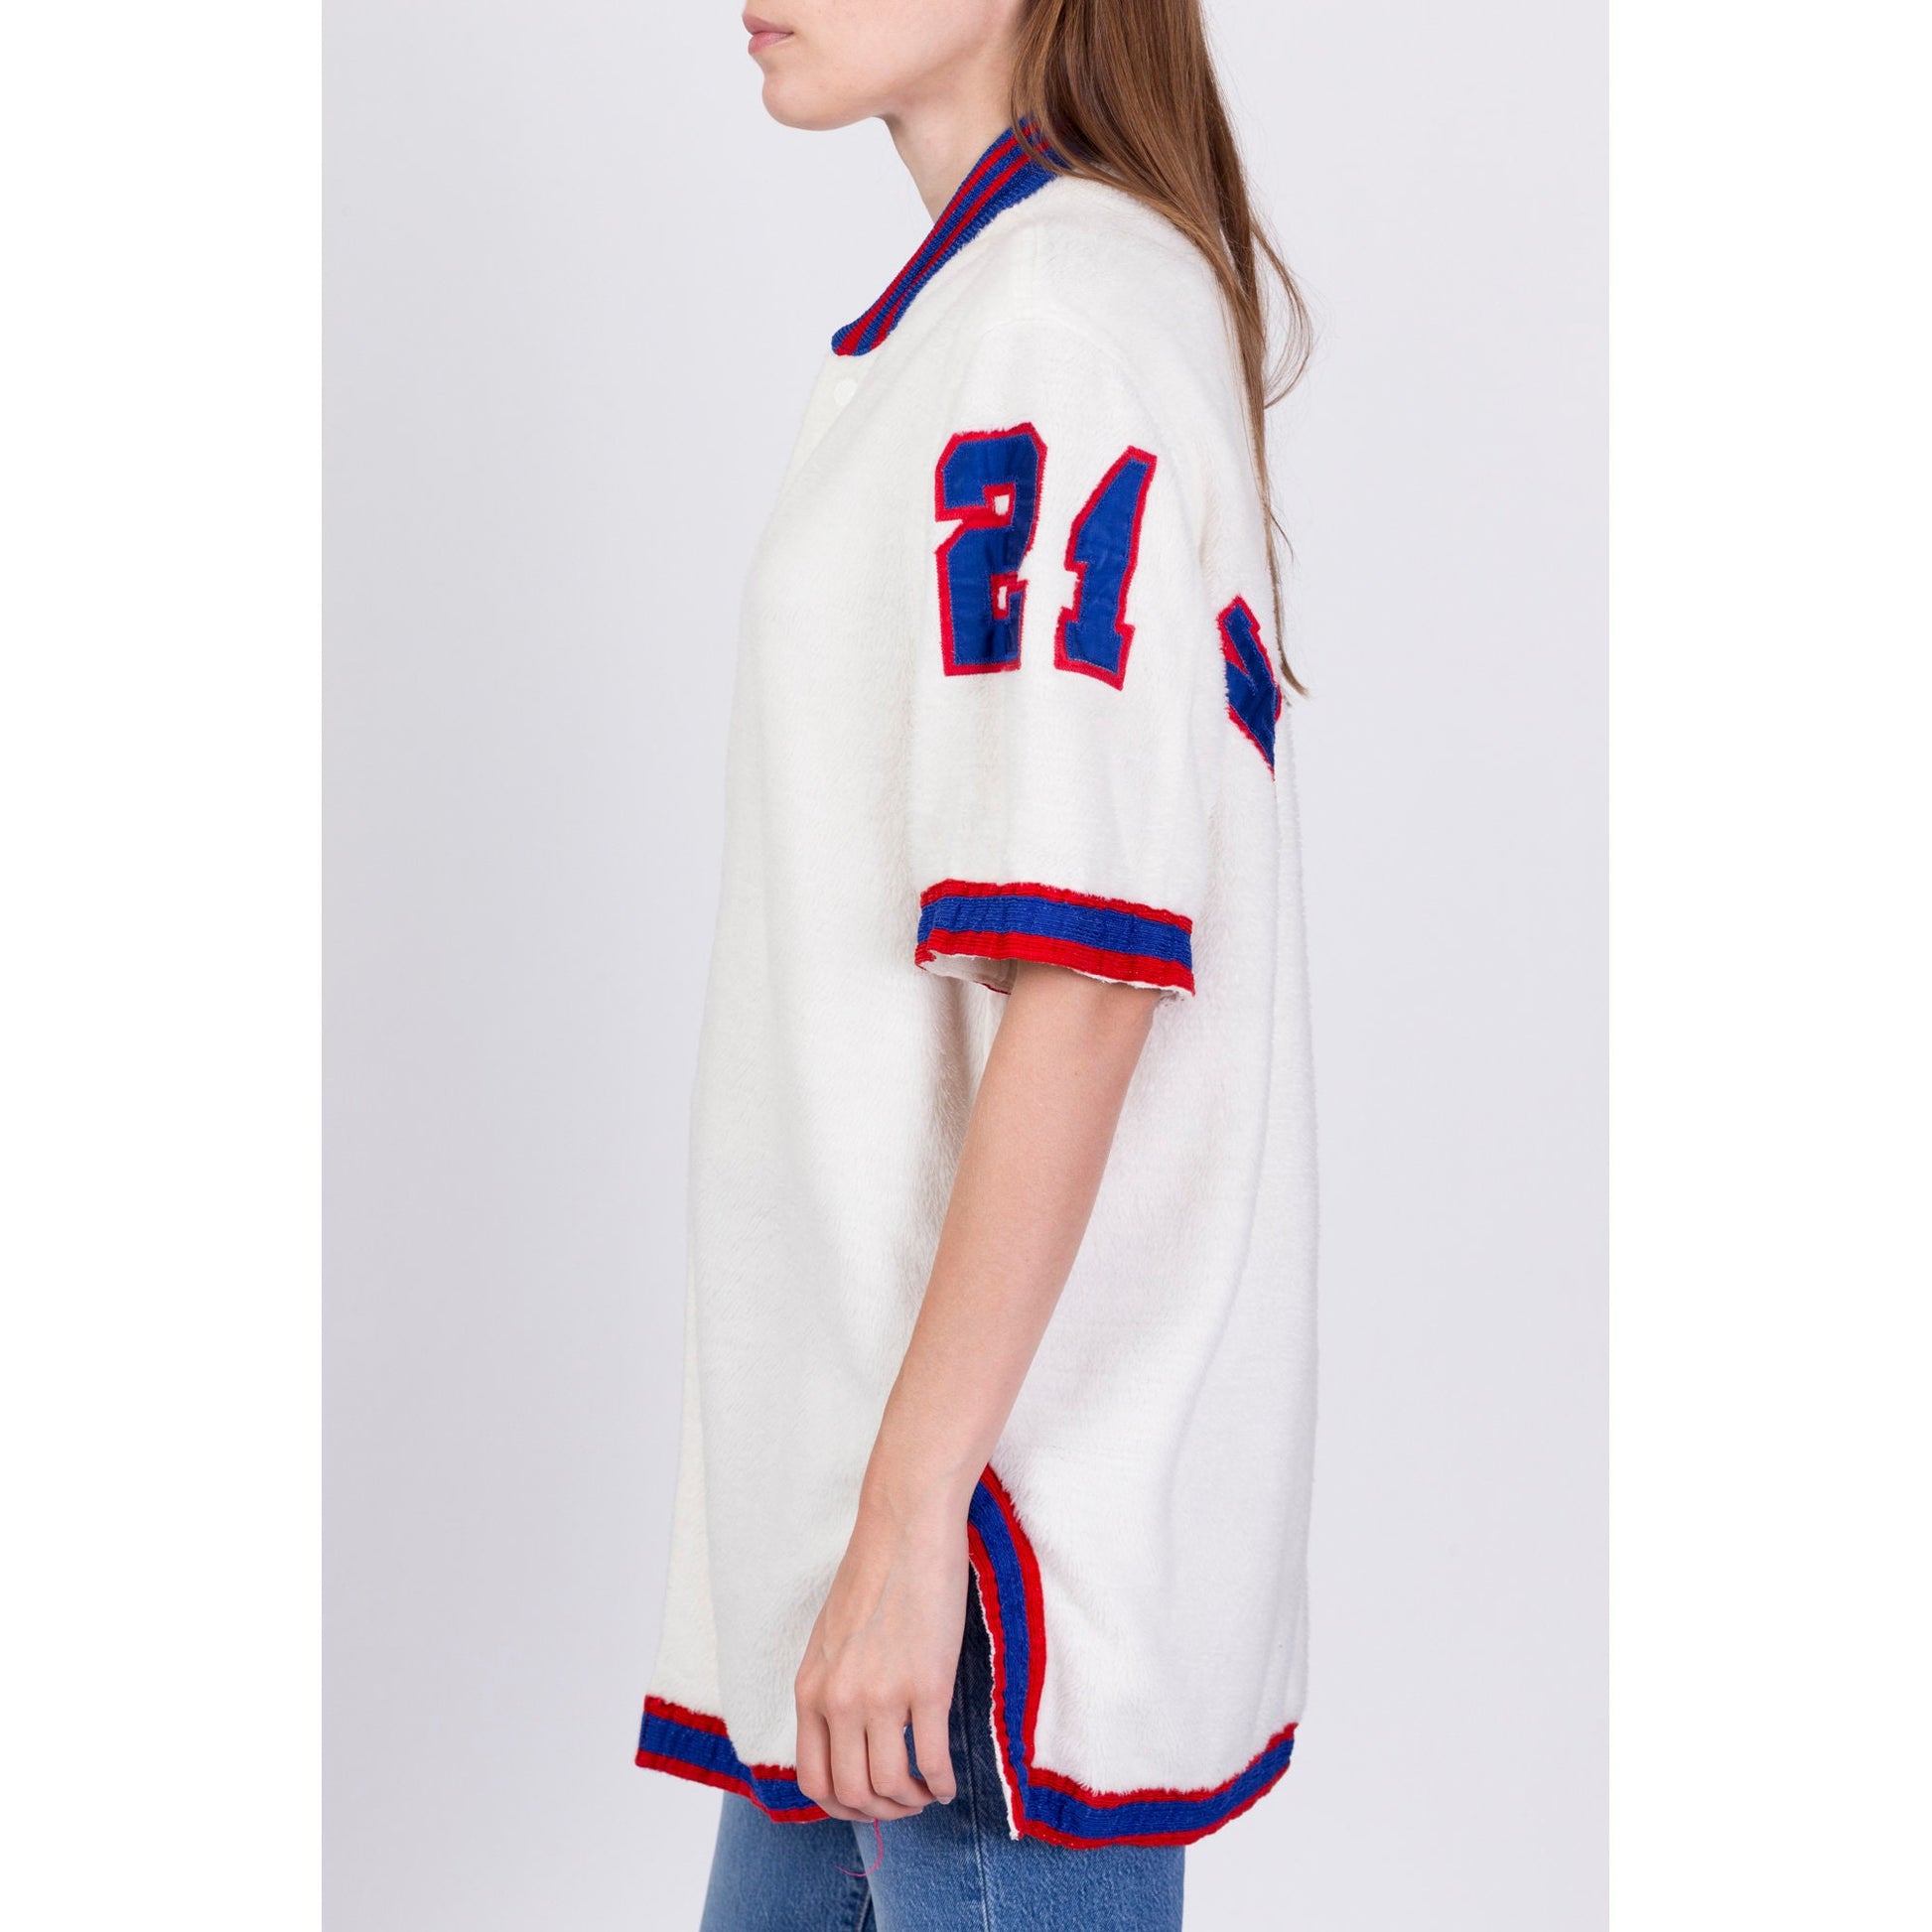 1960s Baseball Fleece Jersey Shirt - Men's Large 